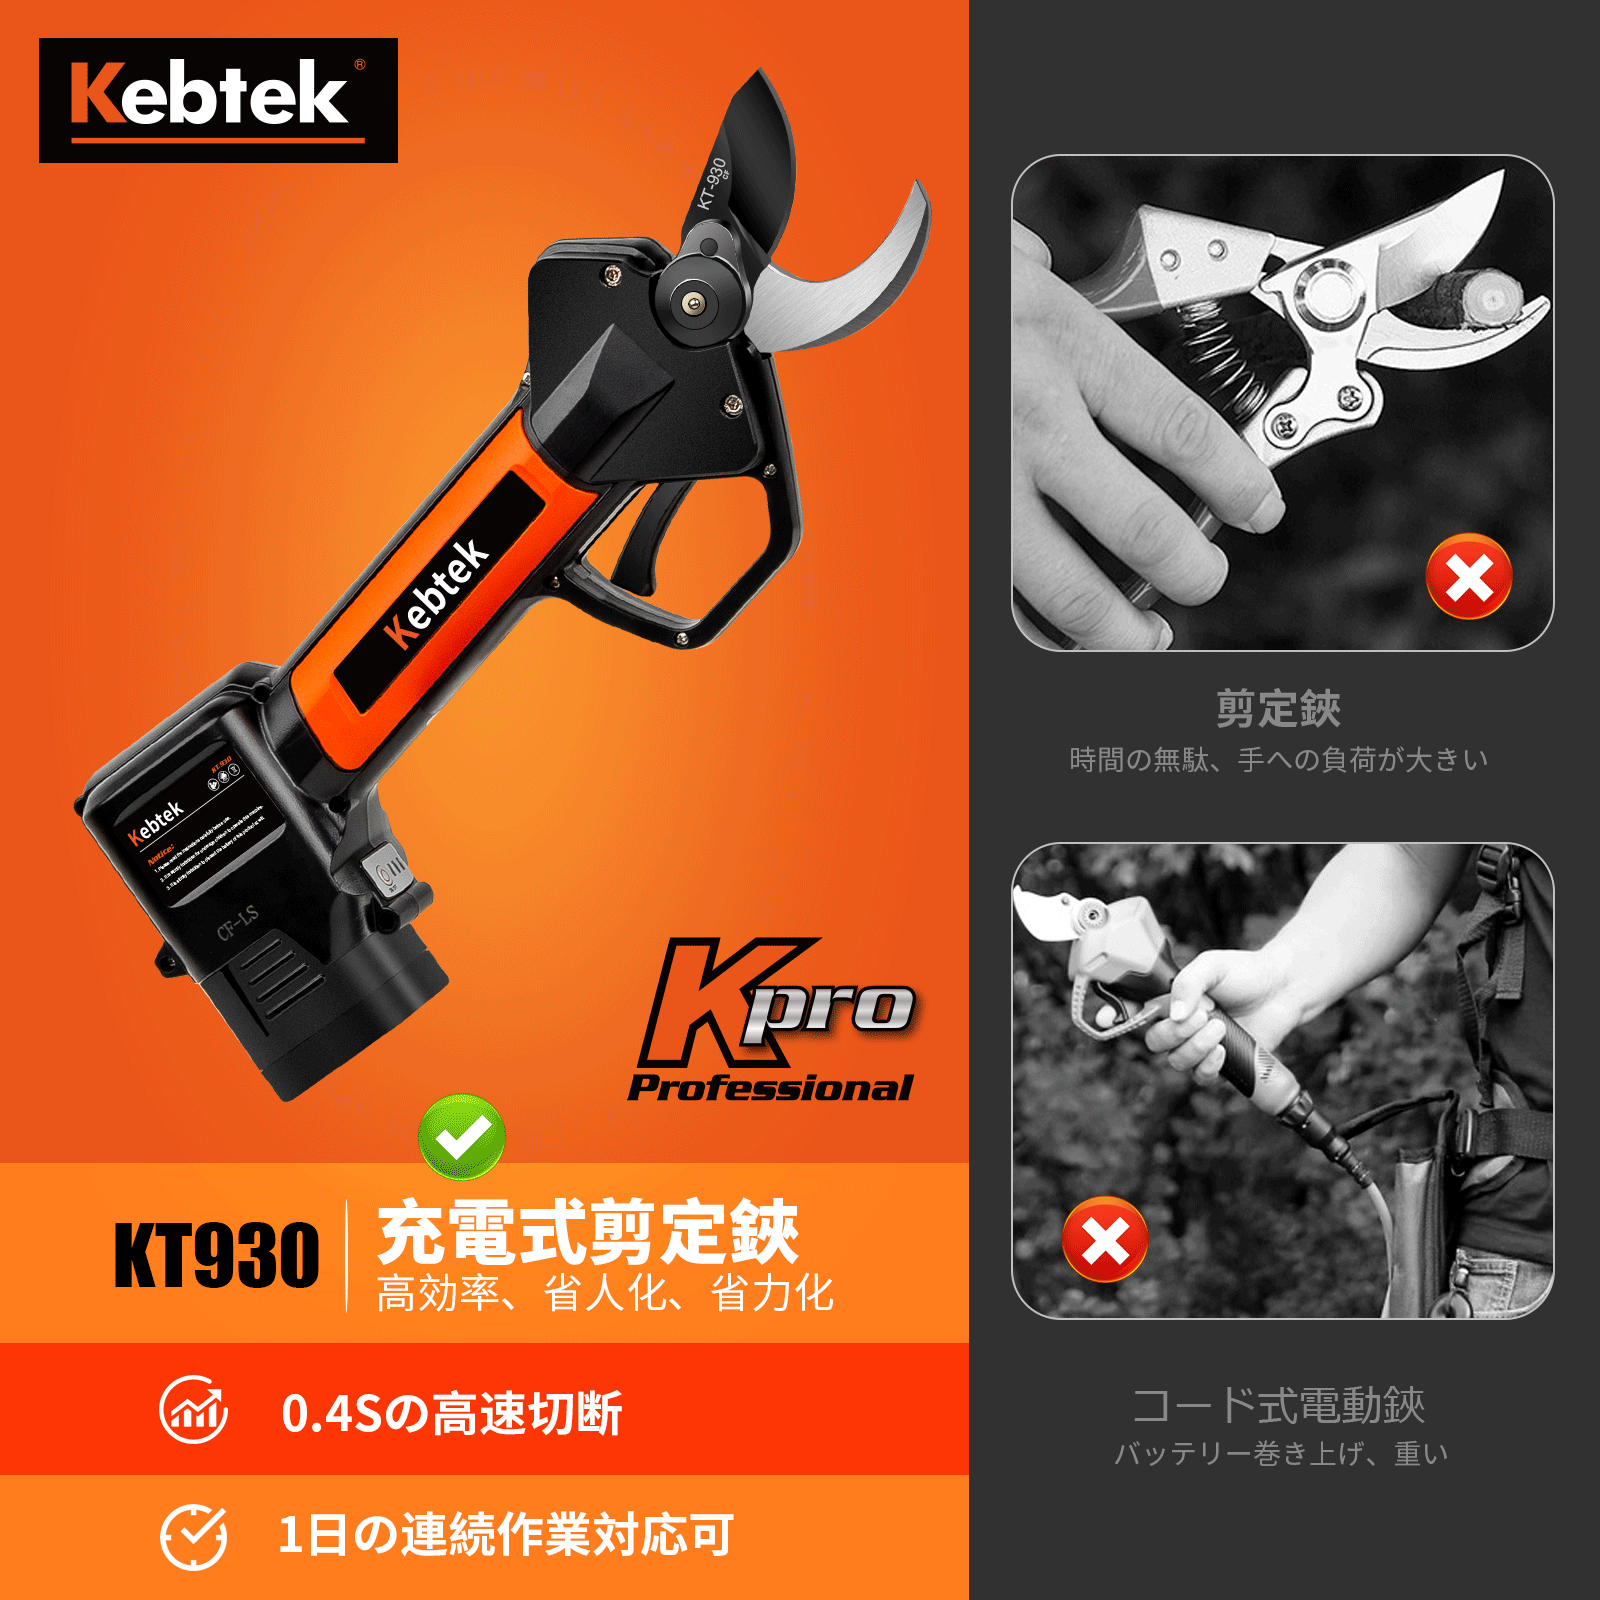 Kebtek 電動剪定バサミ品番KT-930の本体